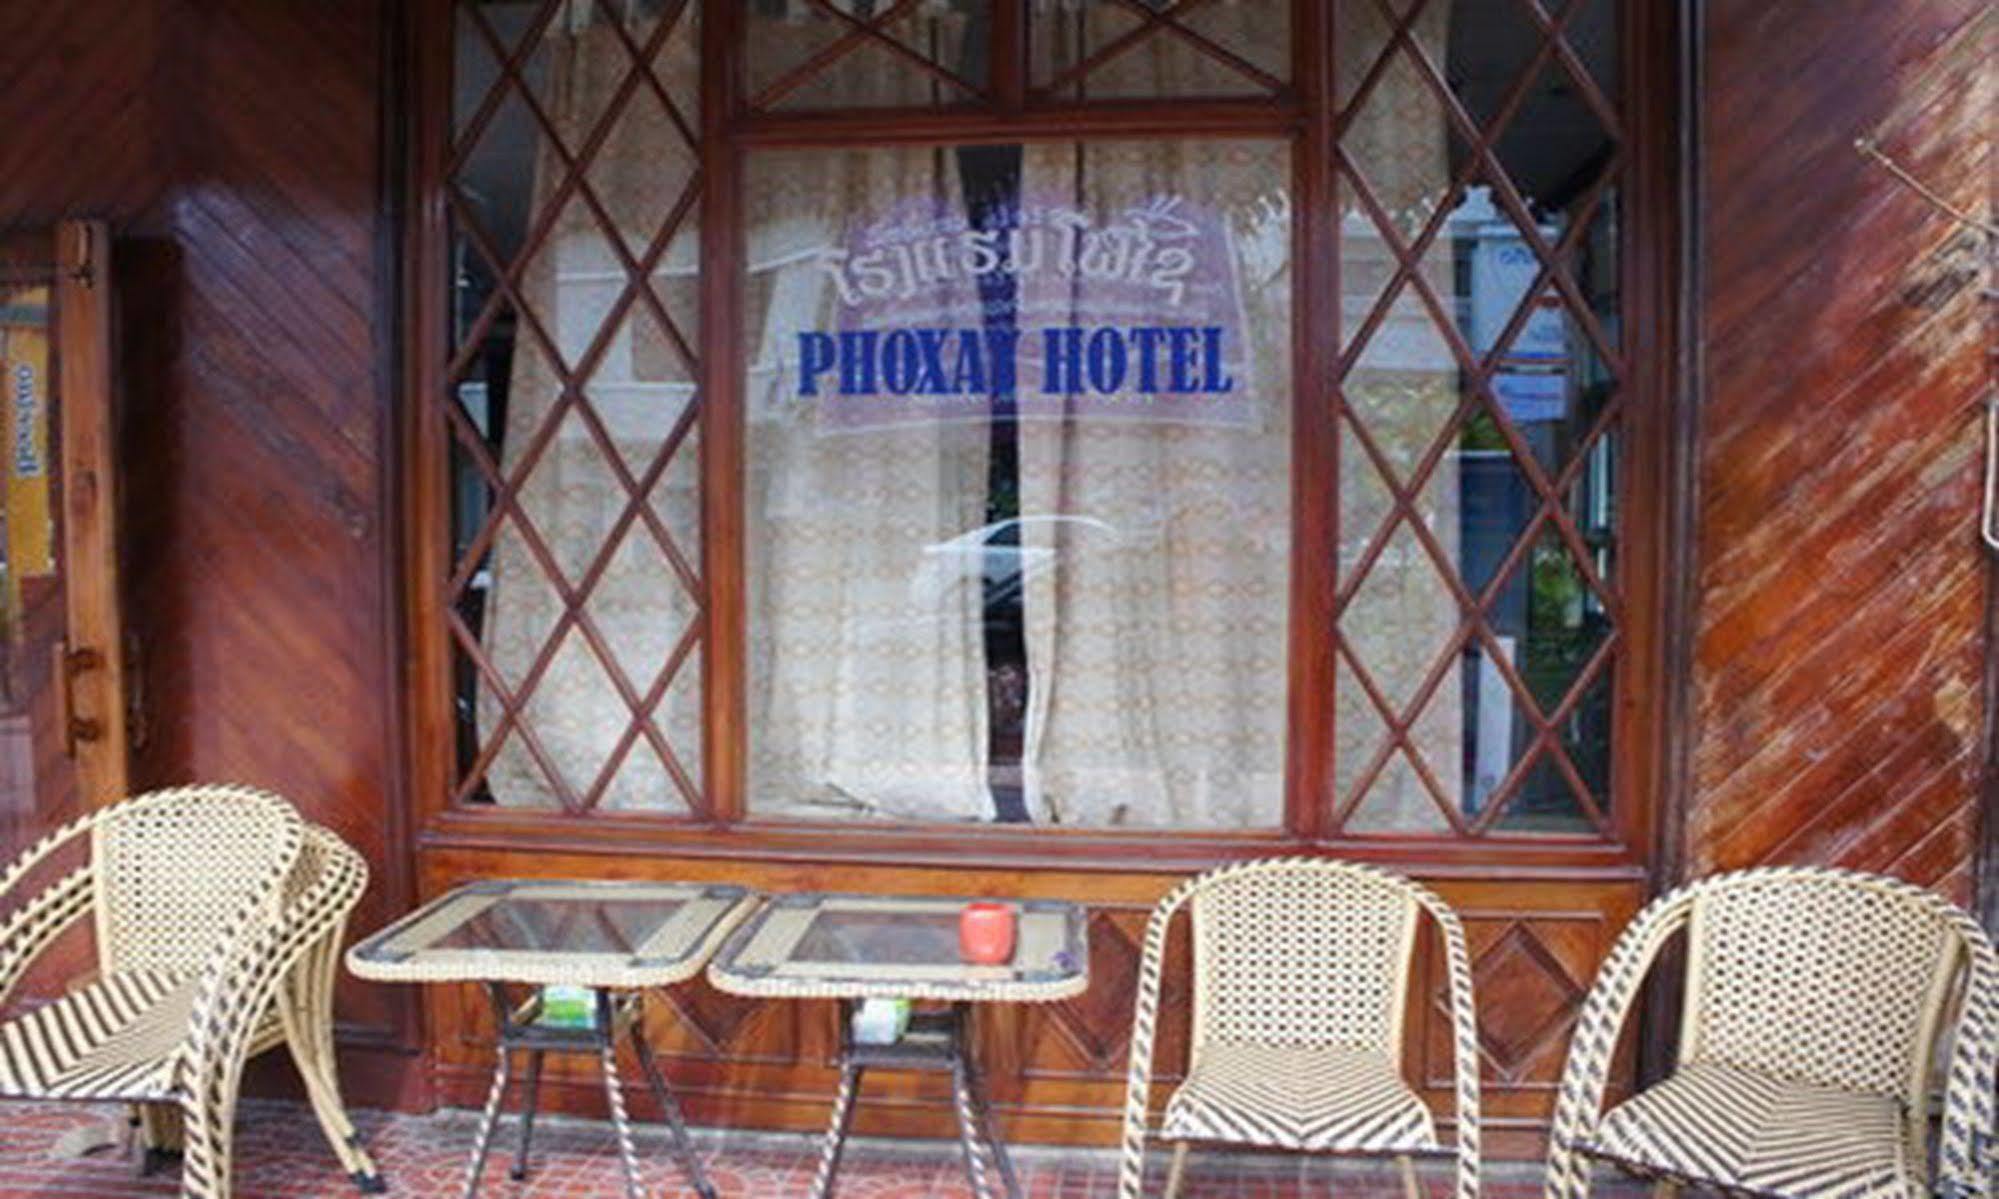 Atlantic Vientiane Hotel Экстерьер фото